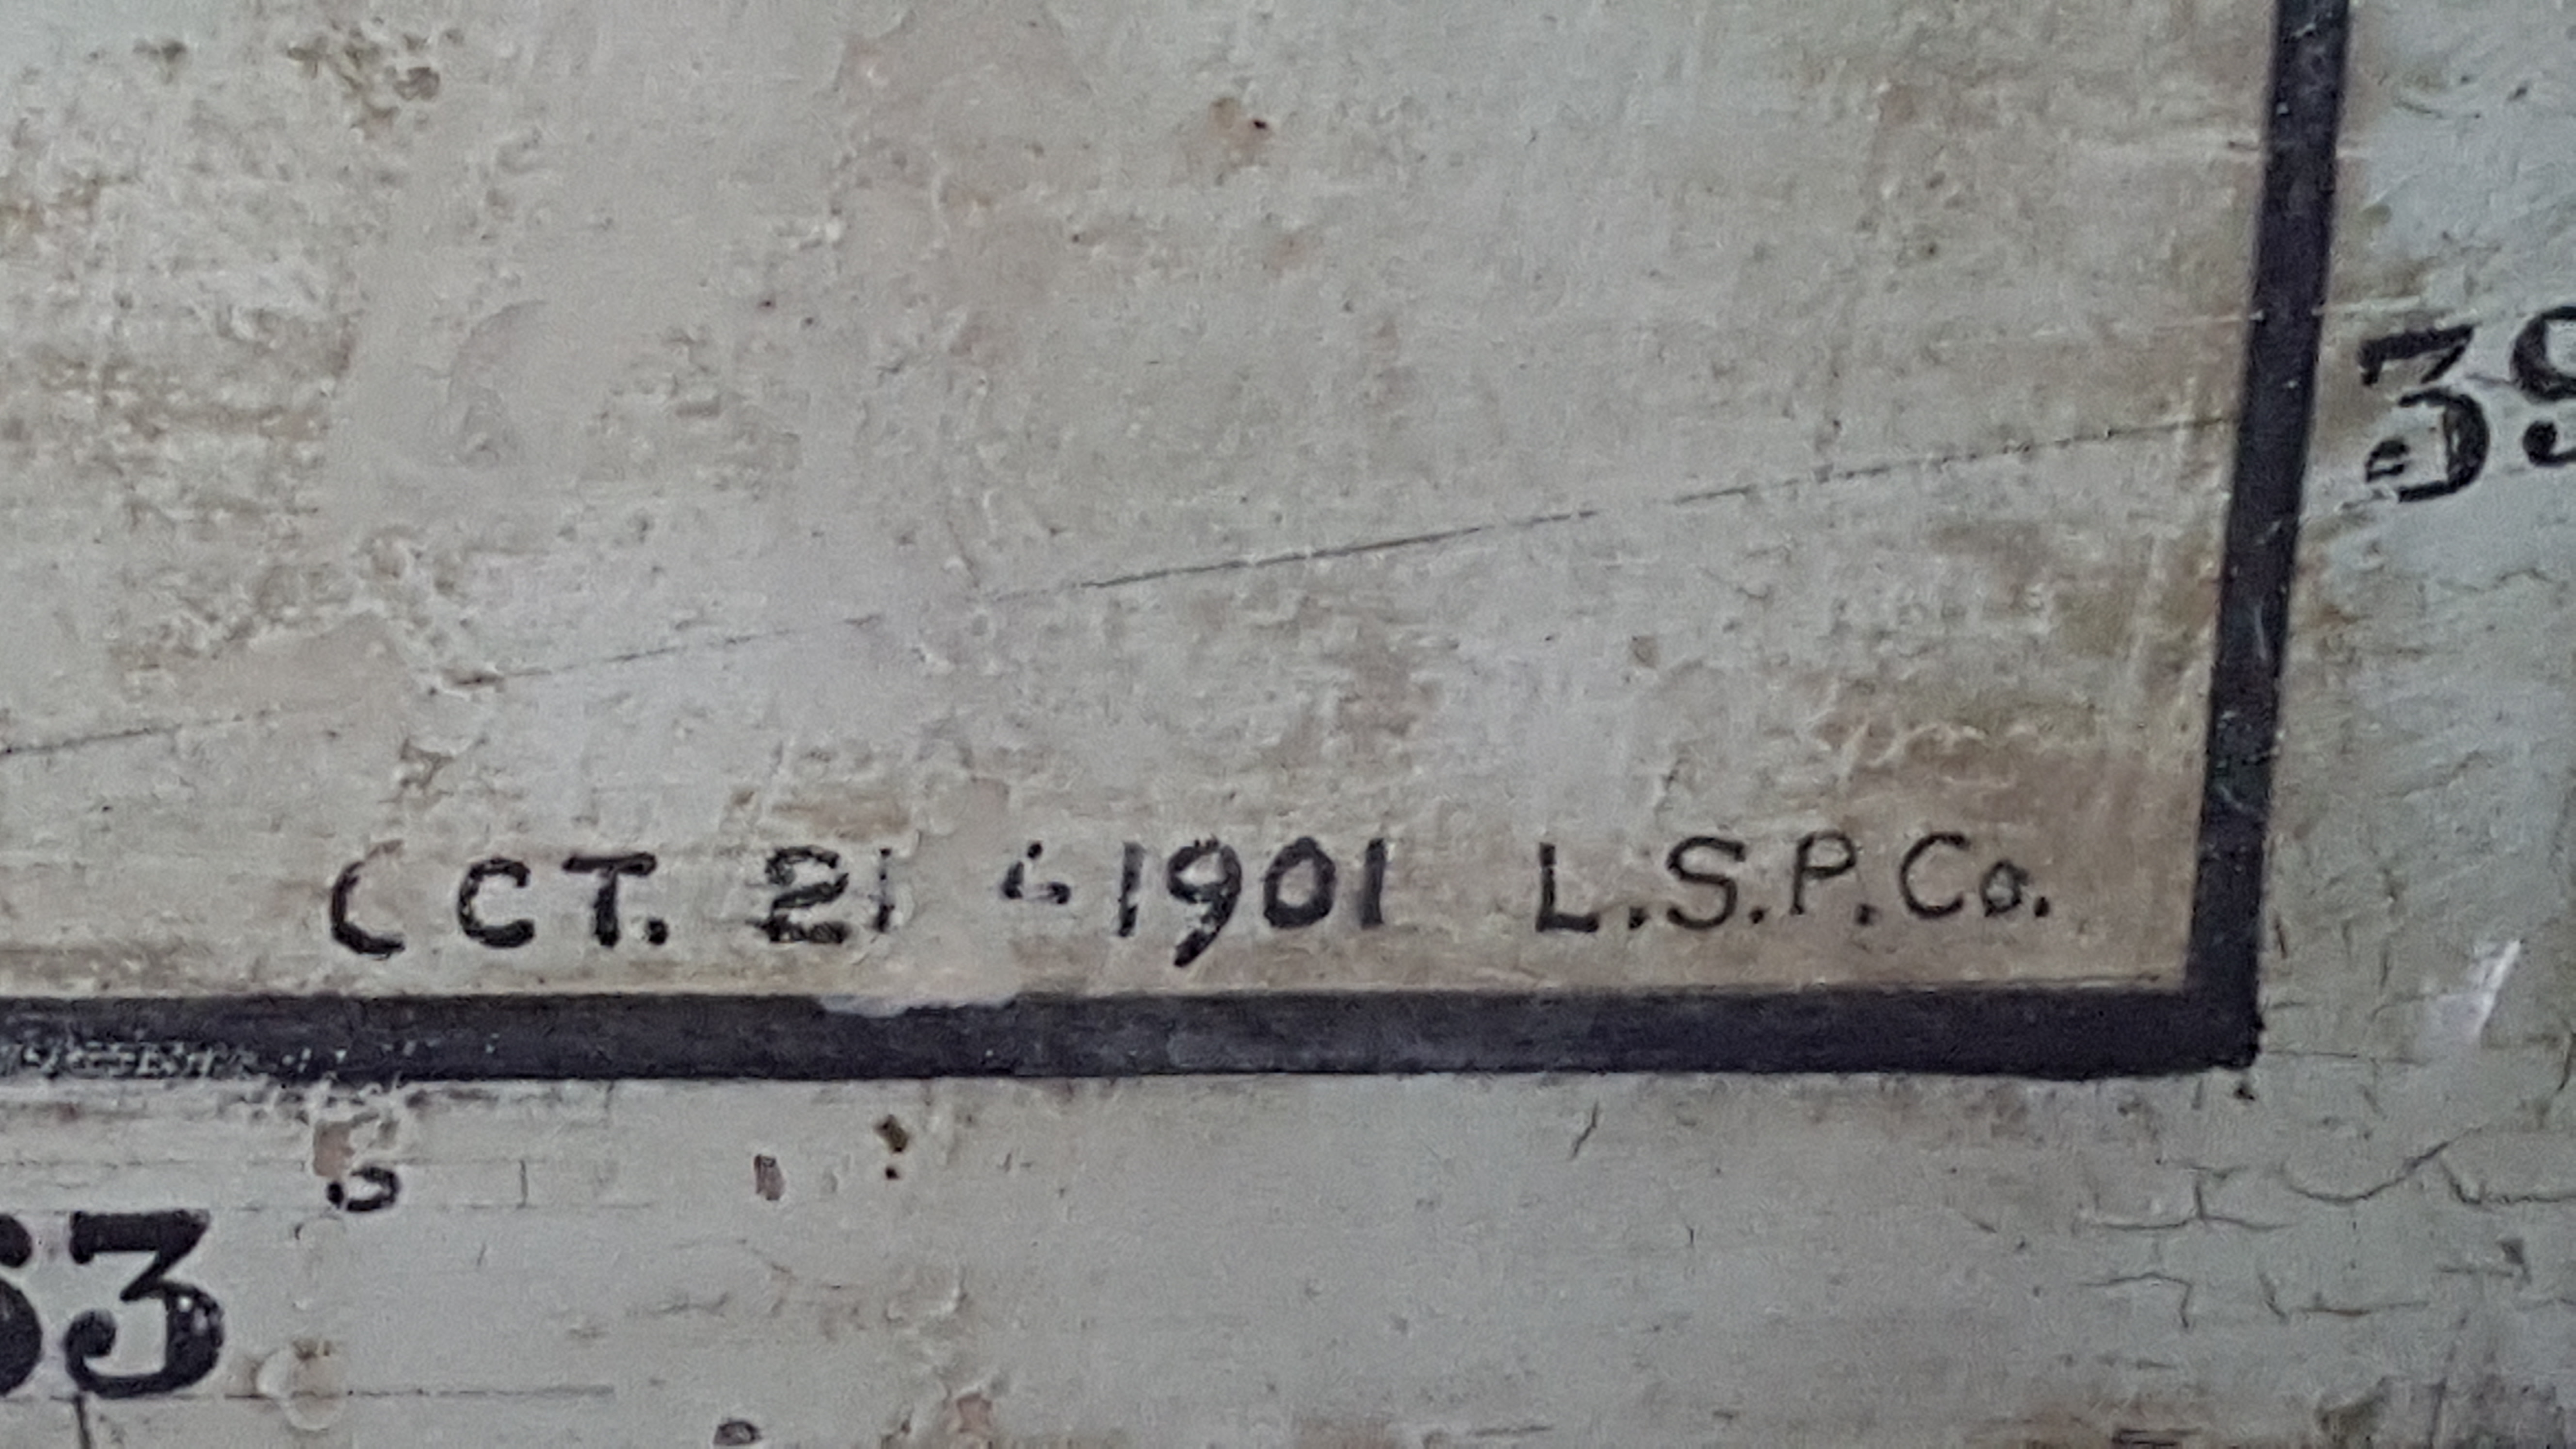 Détails d'un coin de la carte géographique murale de Clergue. Les chiffres indiquent la longitude et la latitude de même que la date d'exécution du tableau. 1901